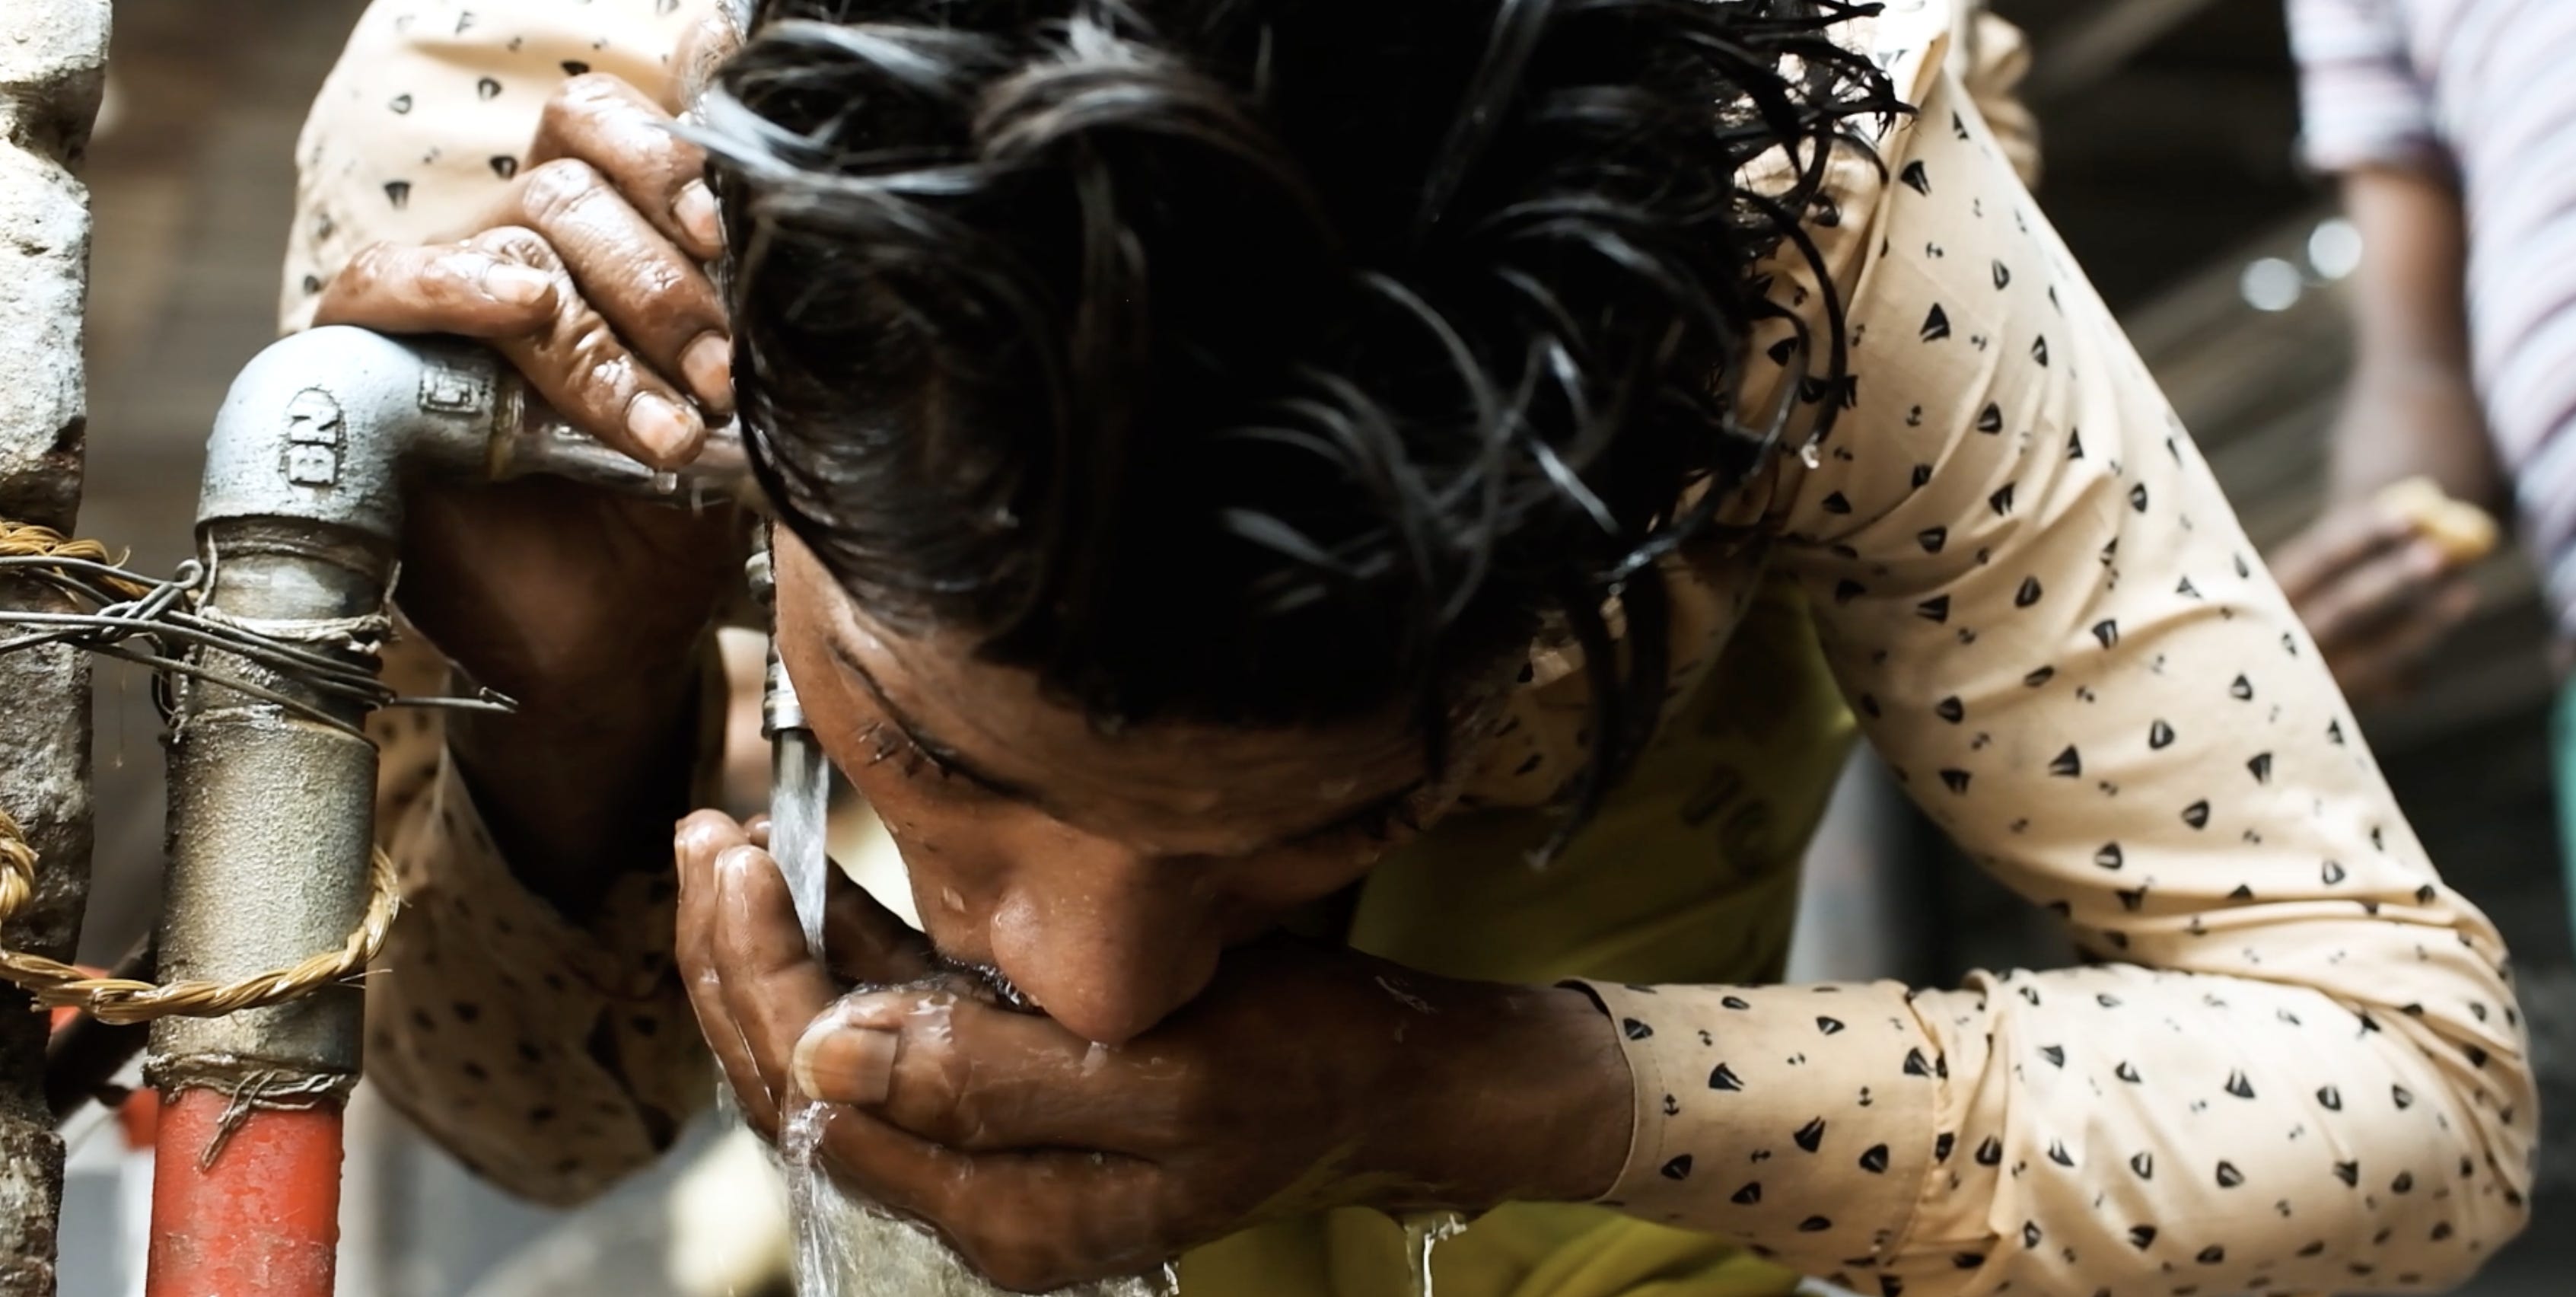 Ein Arbeiter trinkt Wasser direkt aus dem Wasserhahn